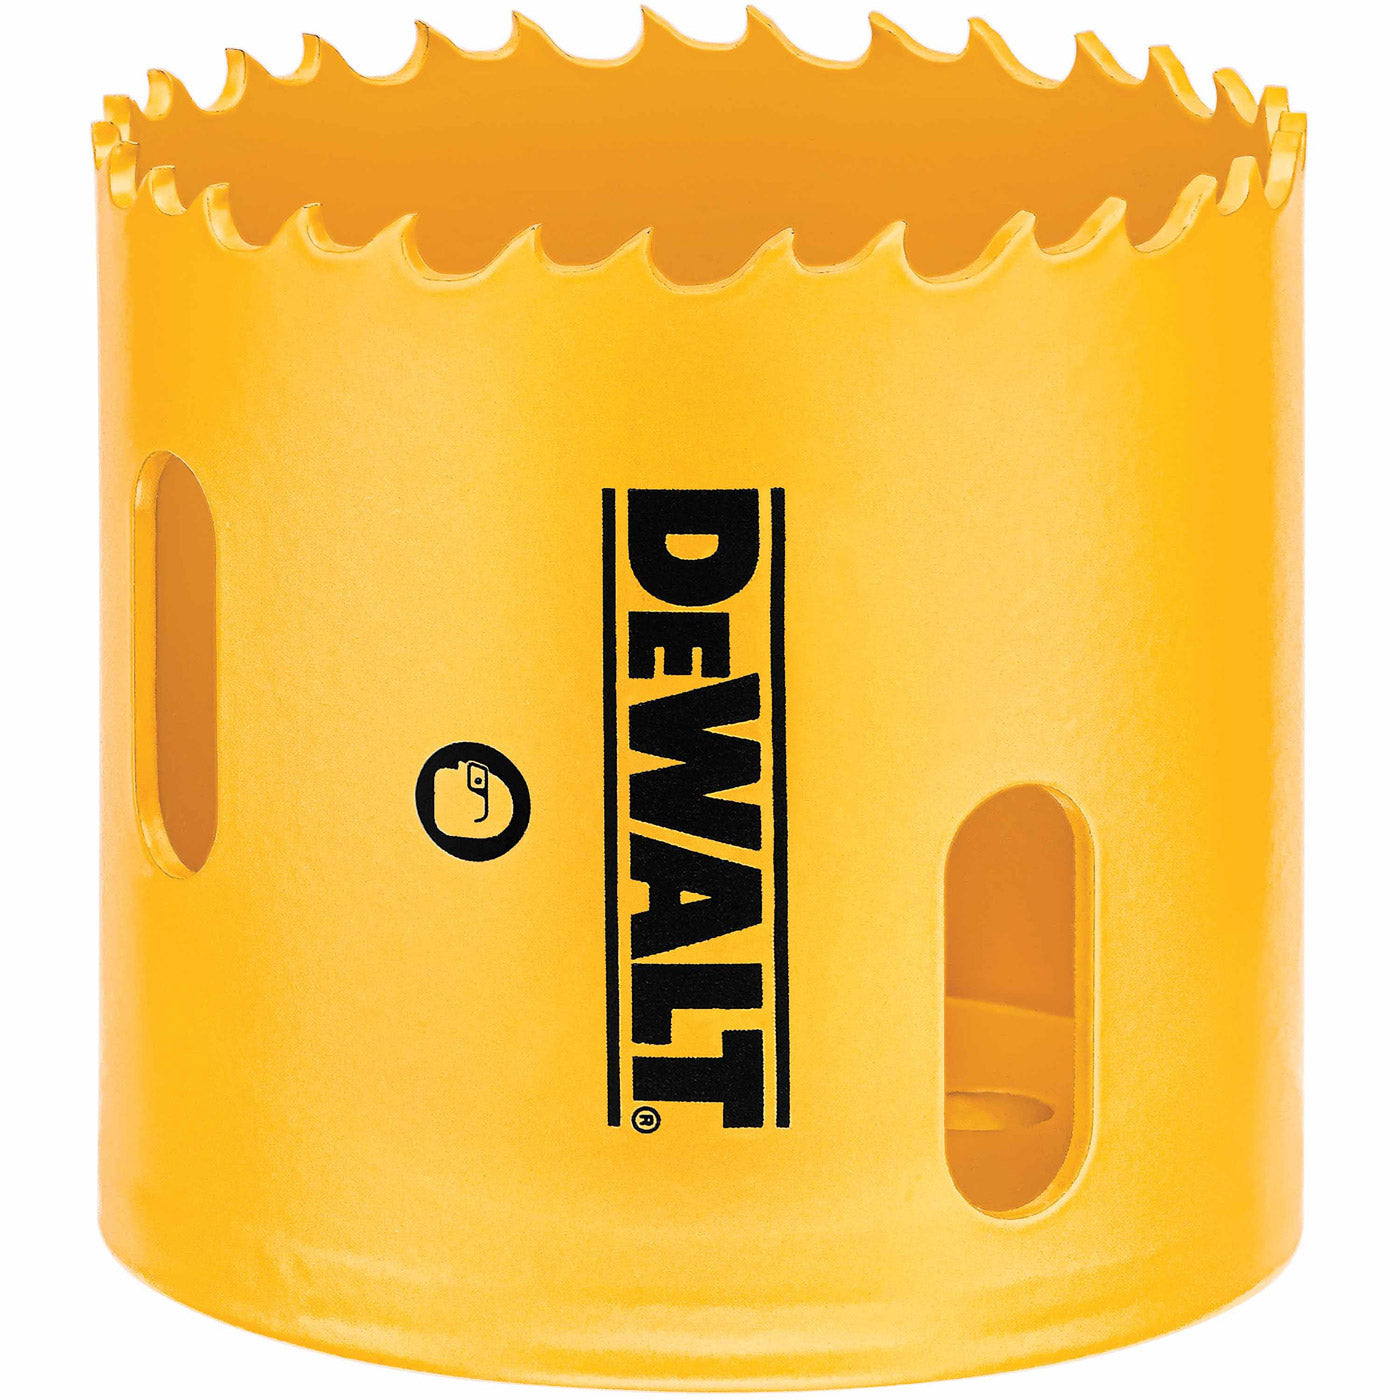 DeWalt D180024 1-1/2" (38mm) Bi-Metal Hole Saw